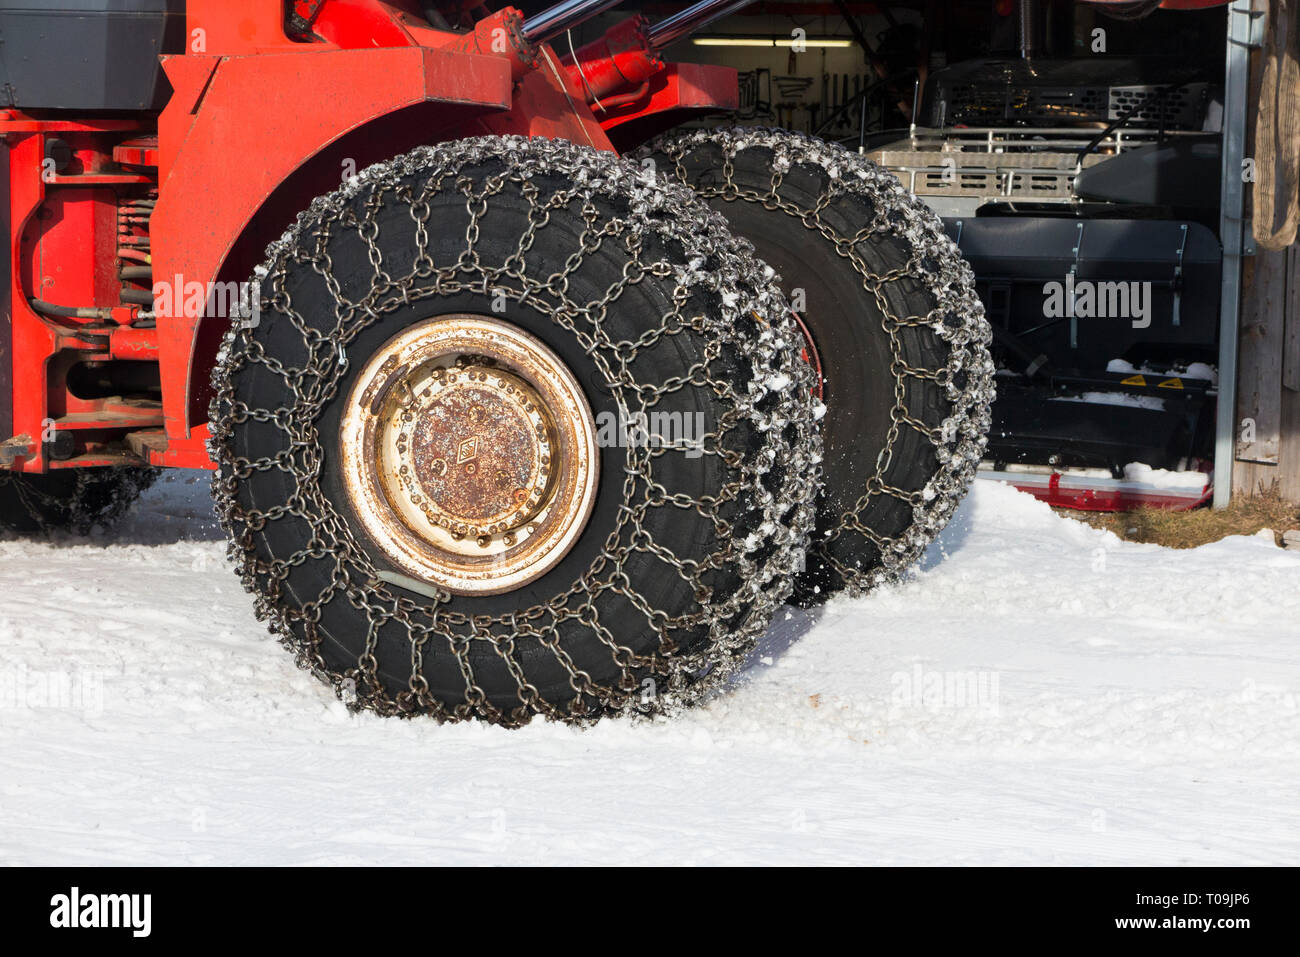 Schneekette / Ketten auf Vorder- & Rückseite/Rad/Räder/Reifen/Reifen eines  landwirtschaftlichen Nutzfahrzeugen, Radlader/Traktor in eisige Winter  Wetter mit Schnee und Eis Stockfotografie - Alamy